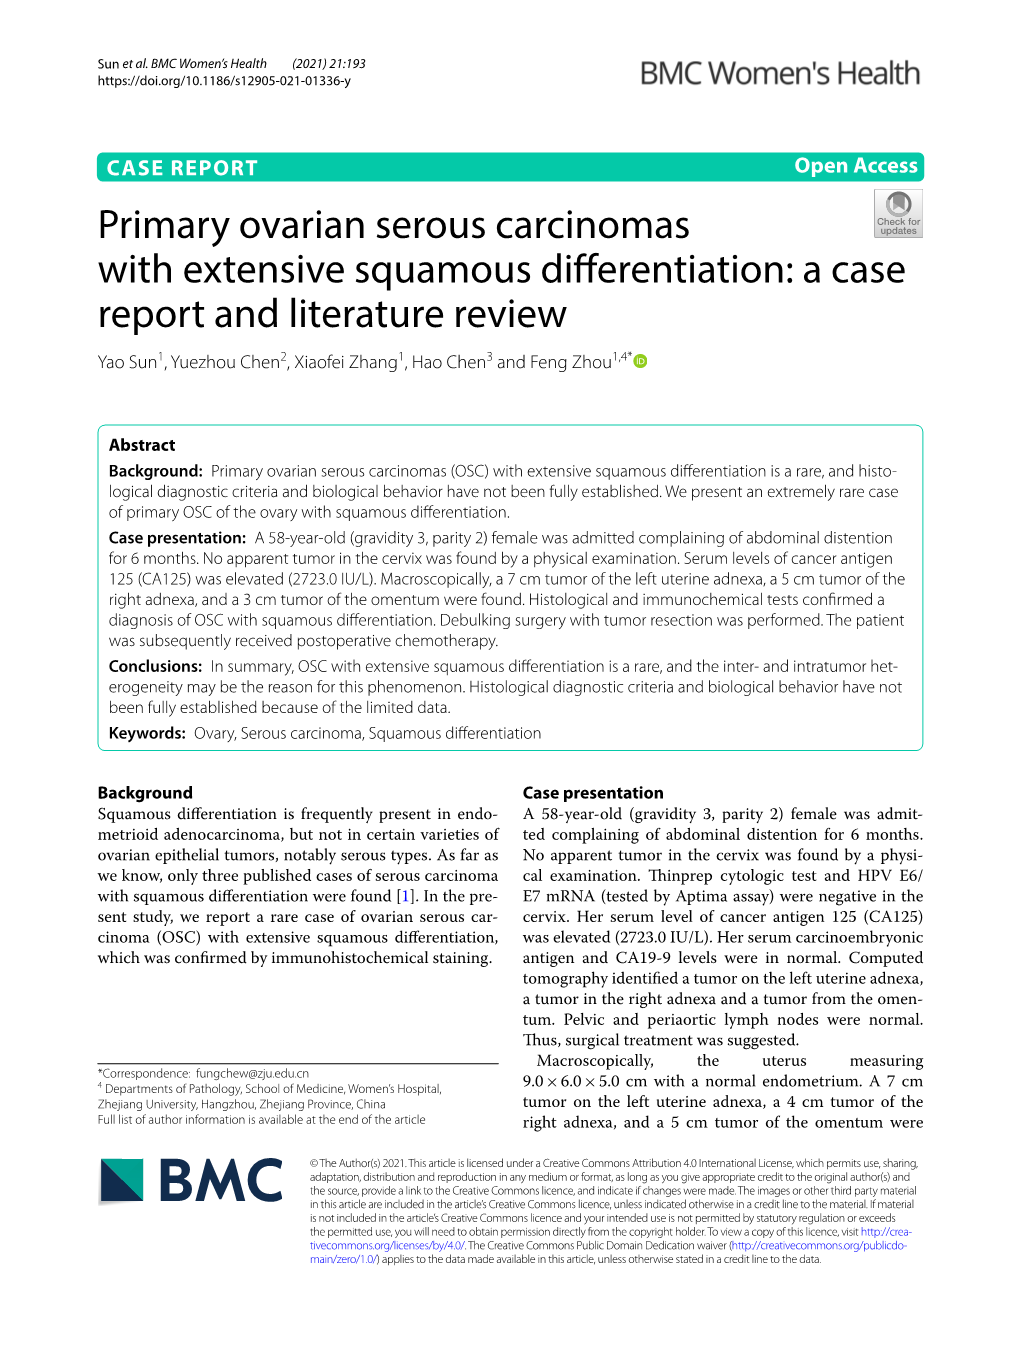 Primary Ovarian Serous Carcinomas With